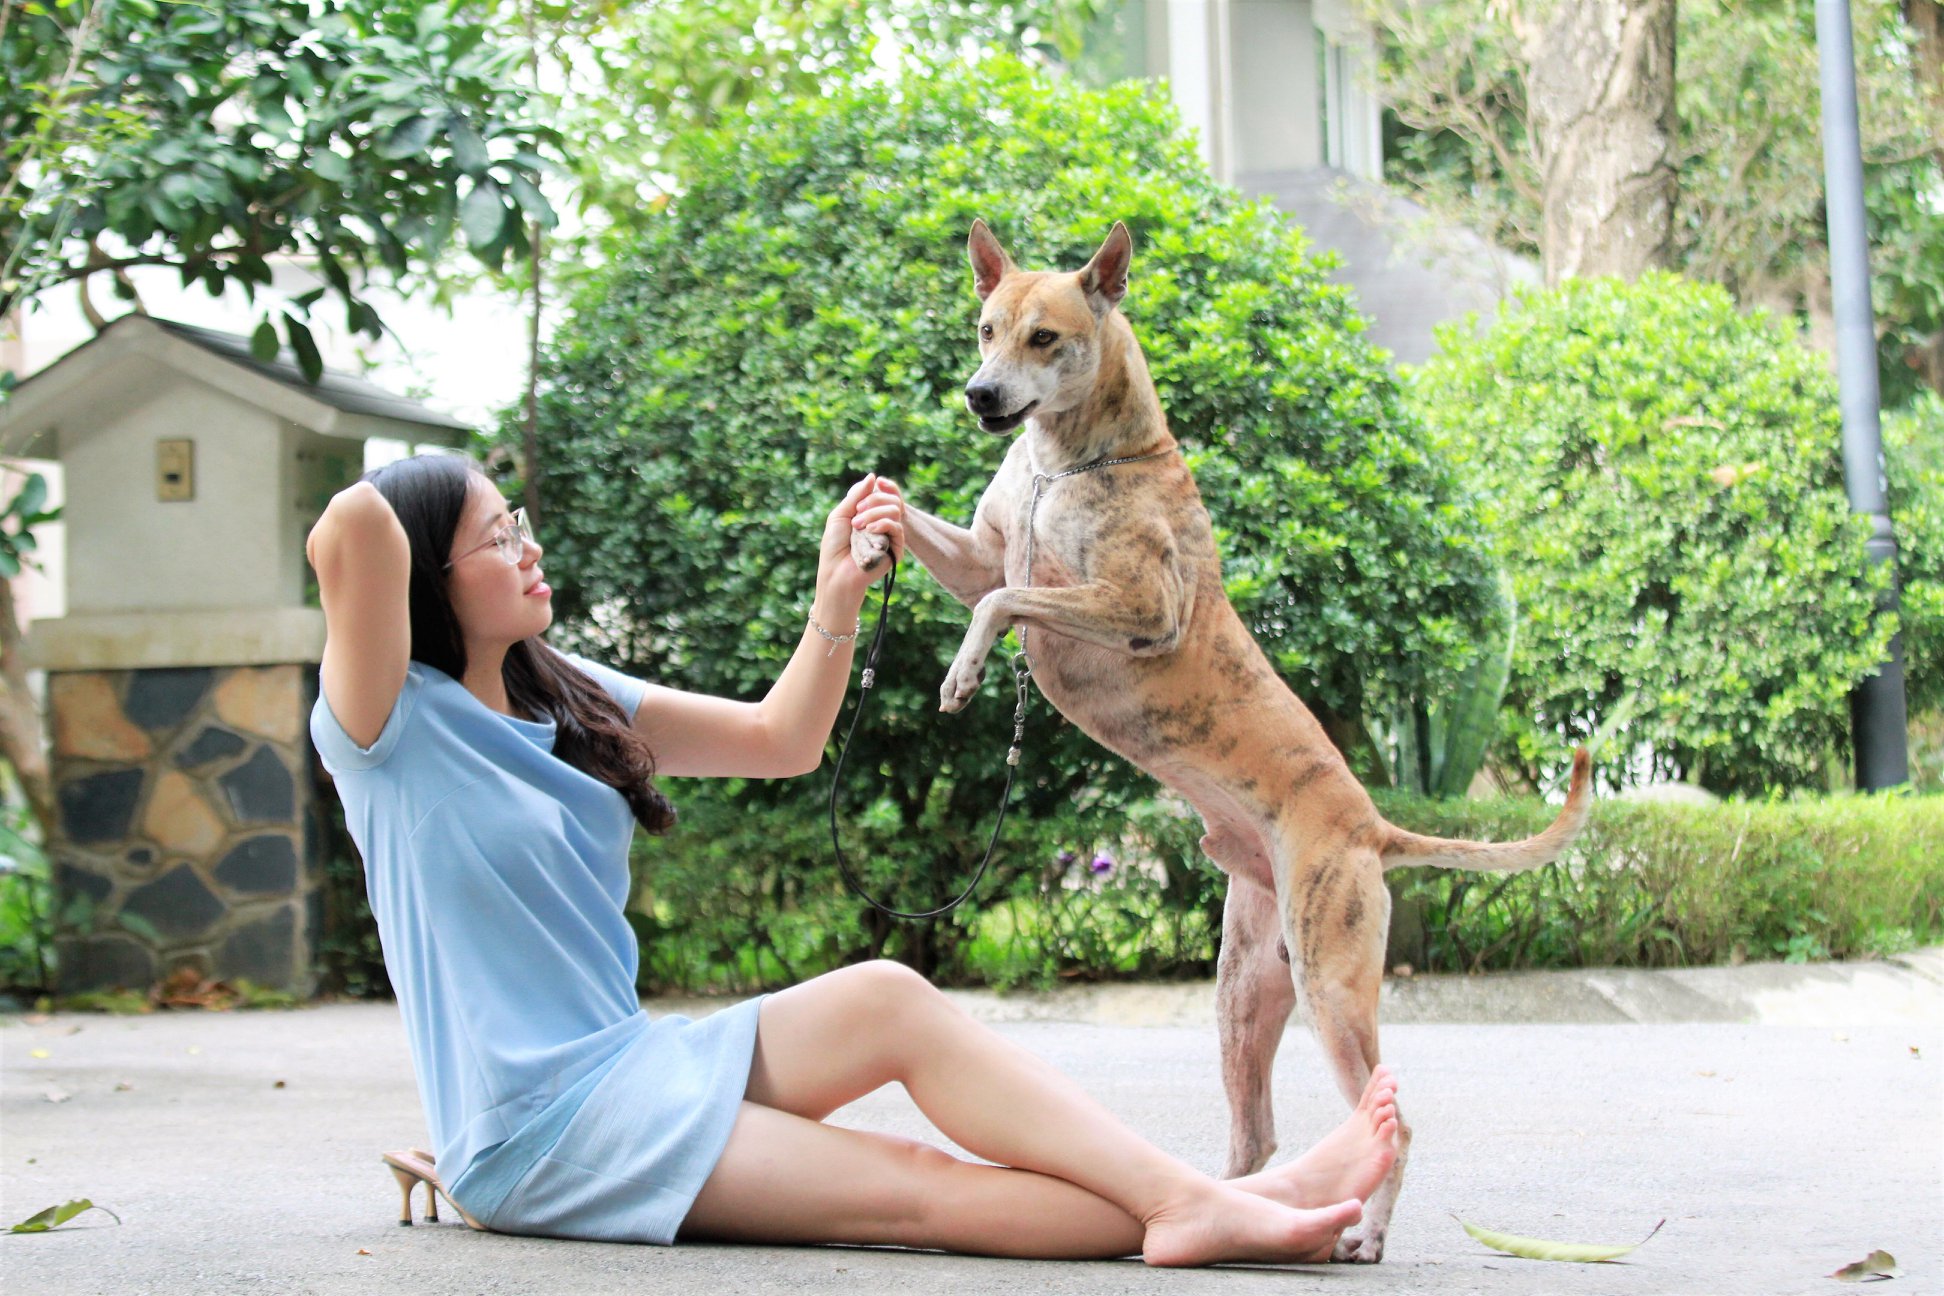 “Khuyển vương” 300 triệu và bí mật thương vụ chuyển nhượng chó Phú Quốc đắt nhất VN - Ảnh 2.